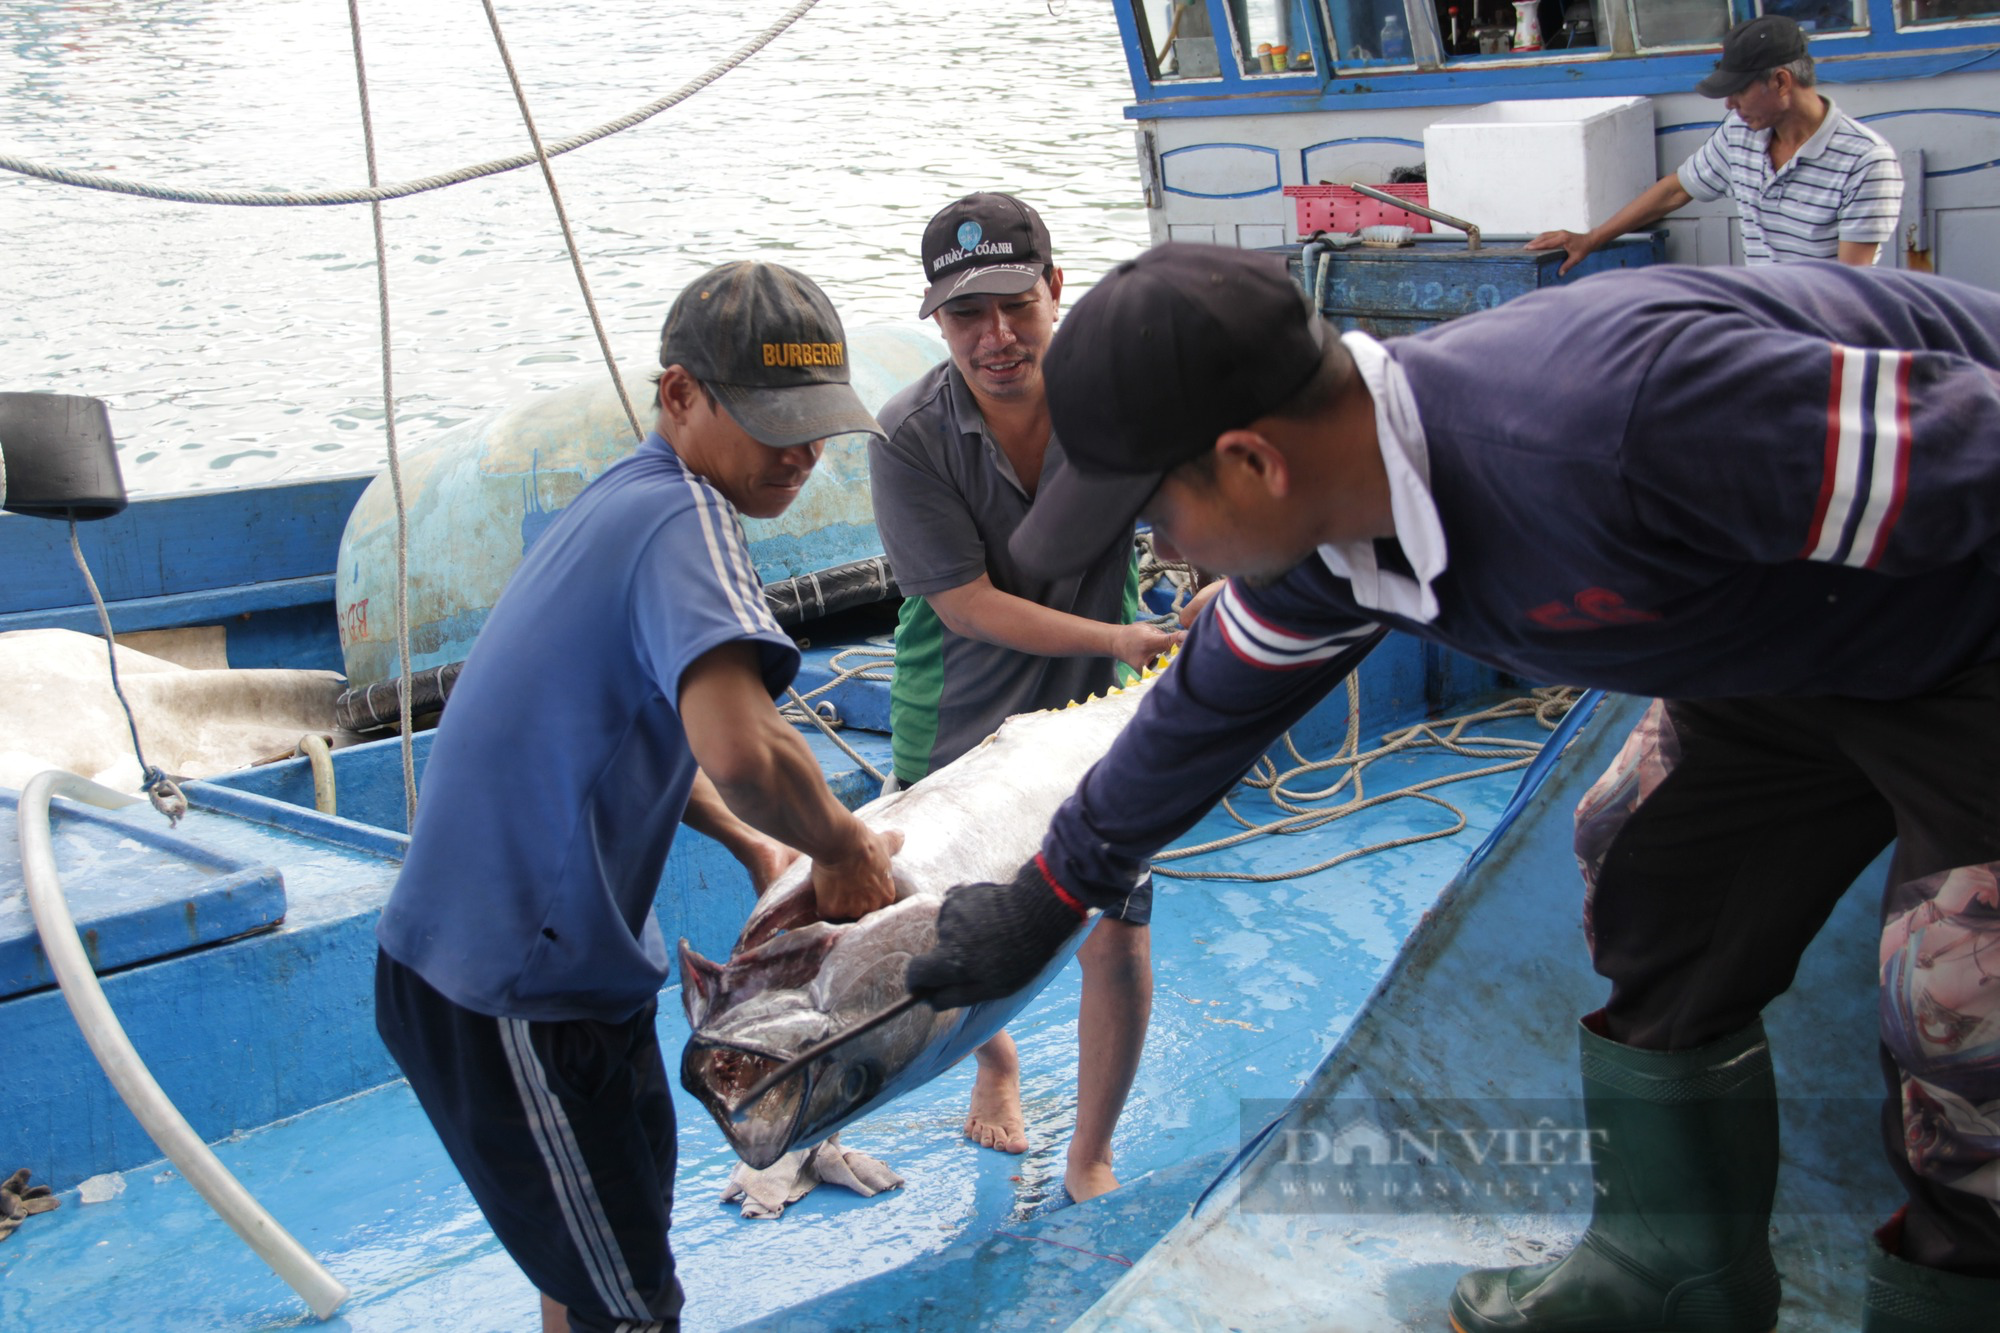 Phó Chủ tịch Bình Định yêu cầu 1 huyện kiểm điểm trách nhiệm người đứng đầu vì có tàu cá vi phạm  - Ảnh 1.